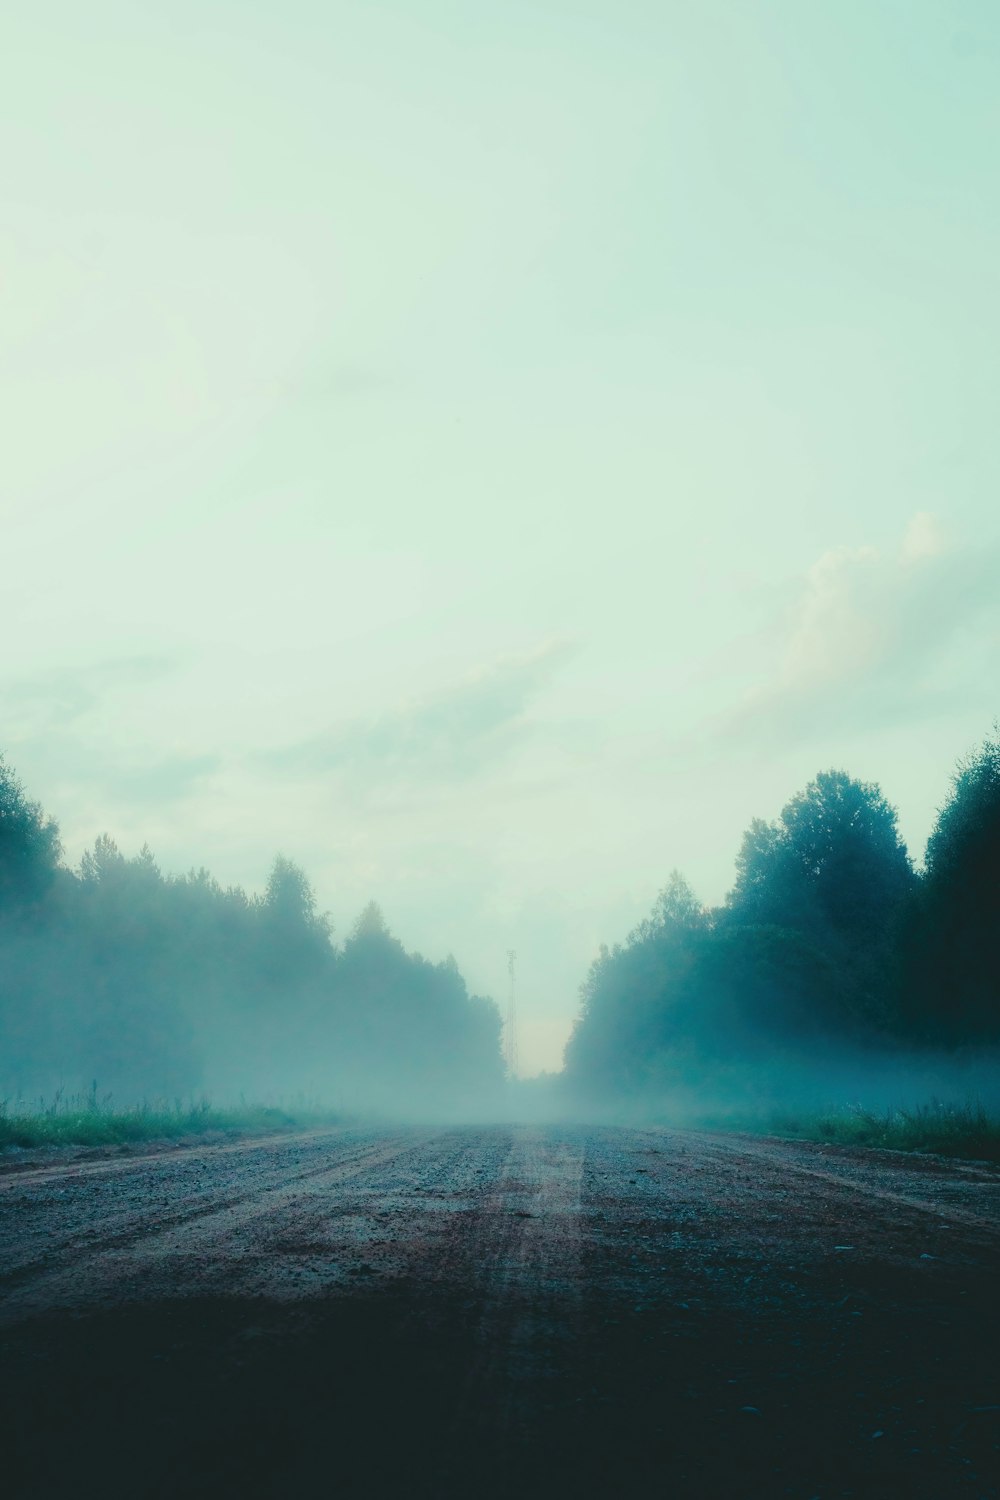 Una strada nebbiosa con alberi in lontananza